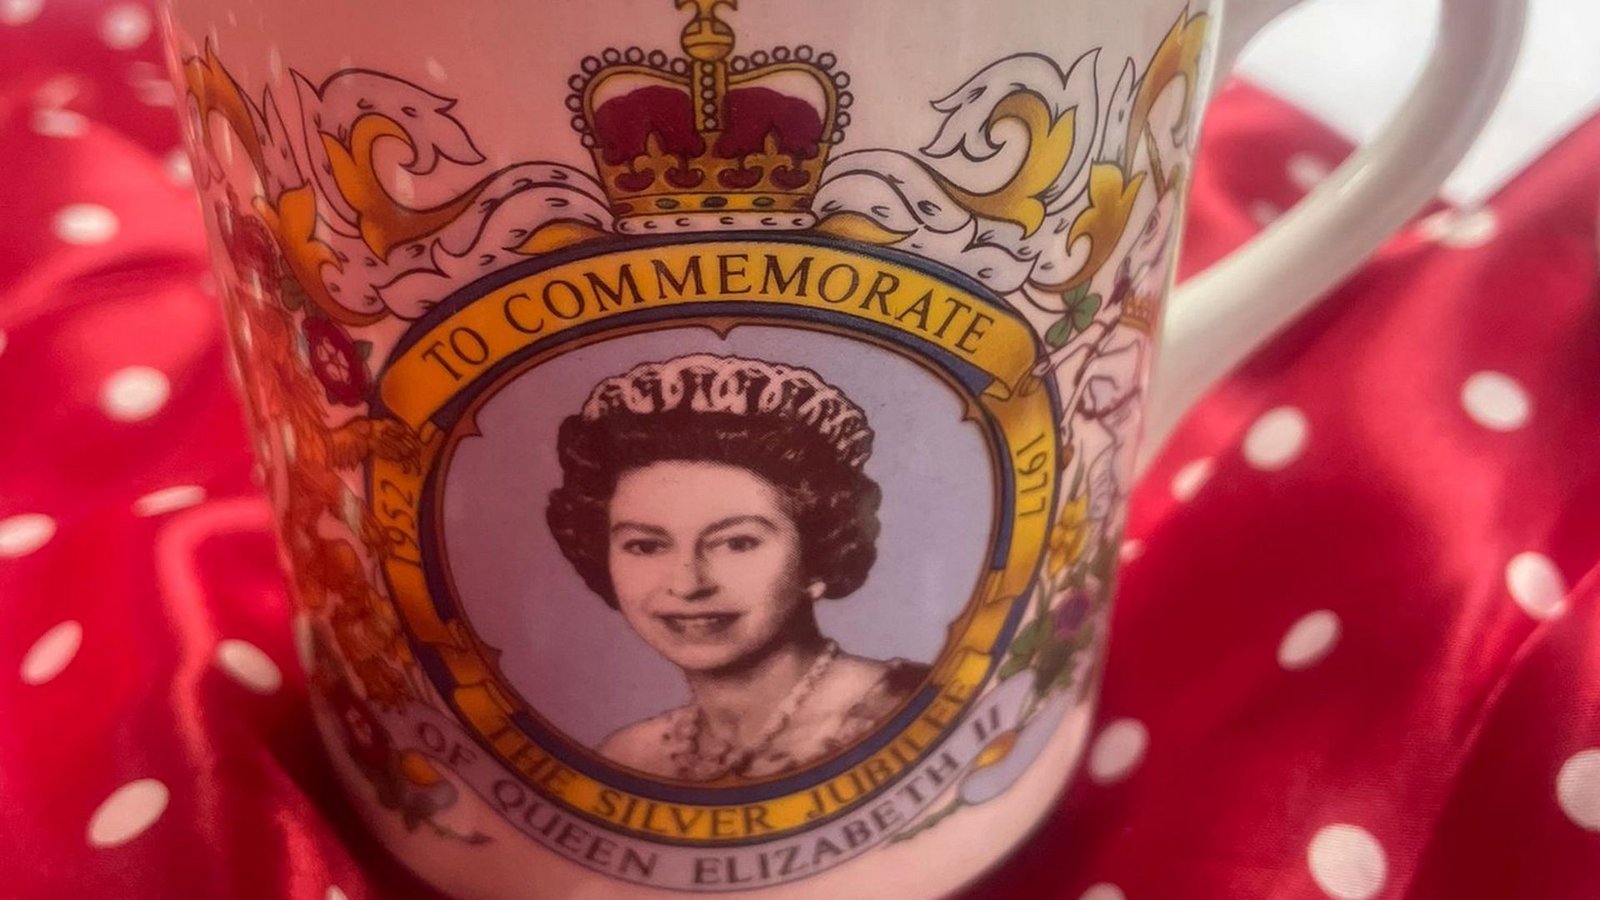 Eine solche Tasse, die an das Silberne Thronjubiläum von Königin Elizabeth II. 1977. erinnert, hat Herzogin Camilla sich zugelegt.Foto: Rebecca English/Daily Mail/PA Media/dpa